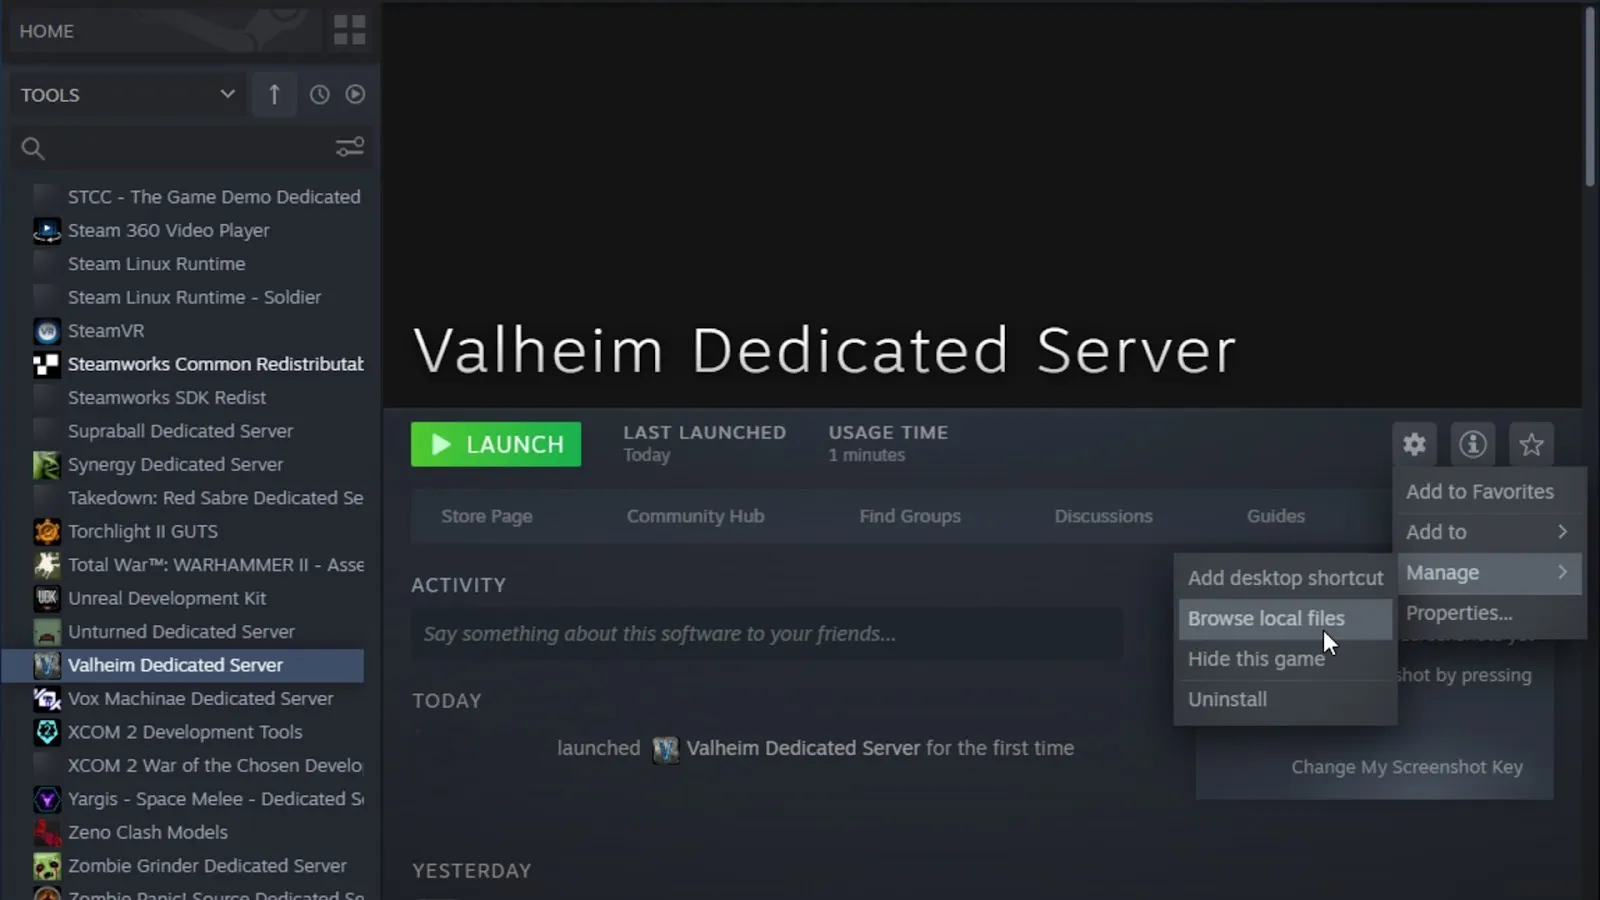 Launching dedicated Valheim server